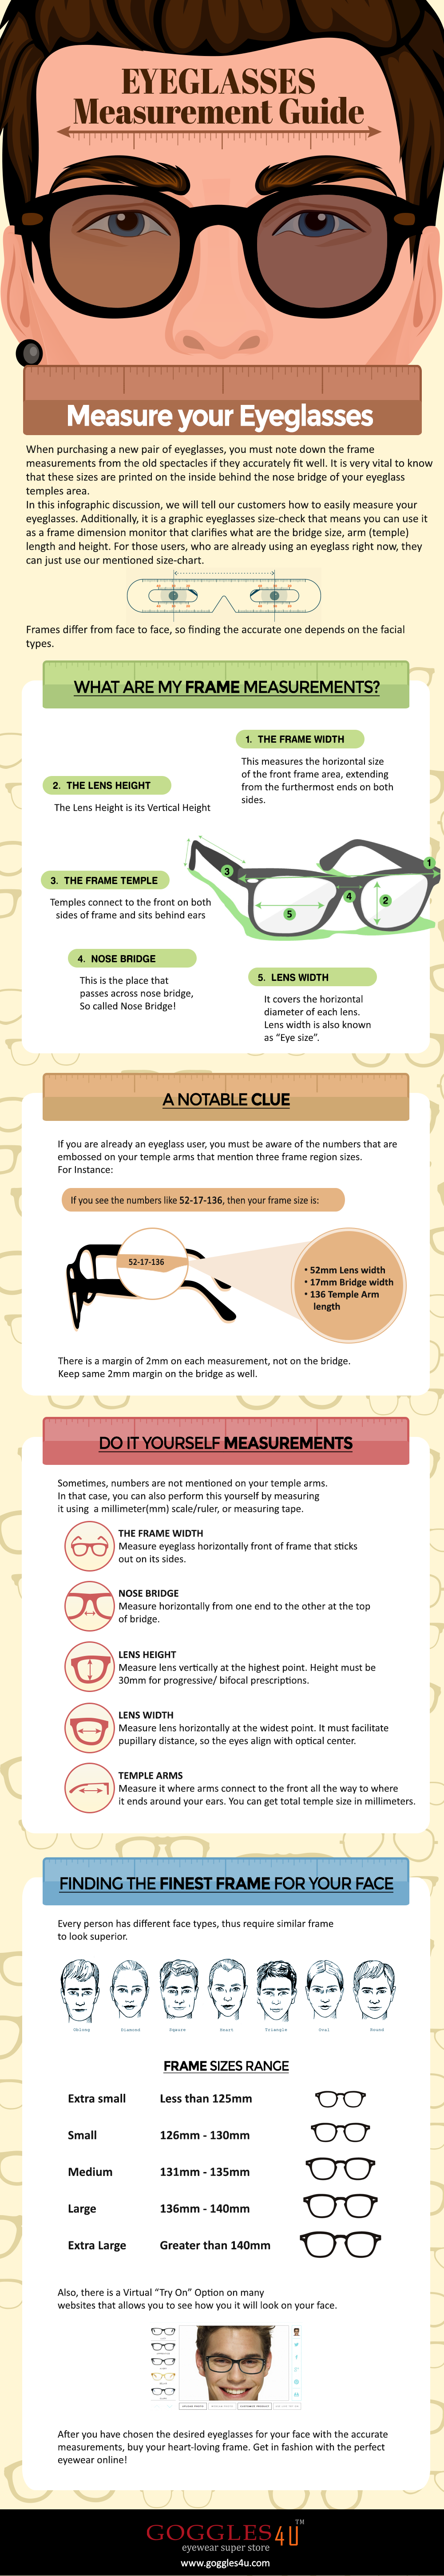 Eyeglasses Measurement Guide